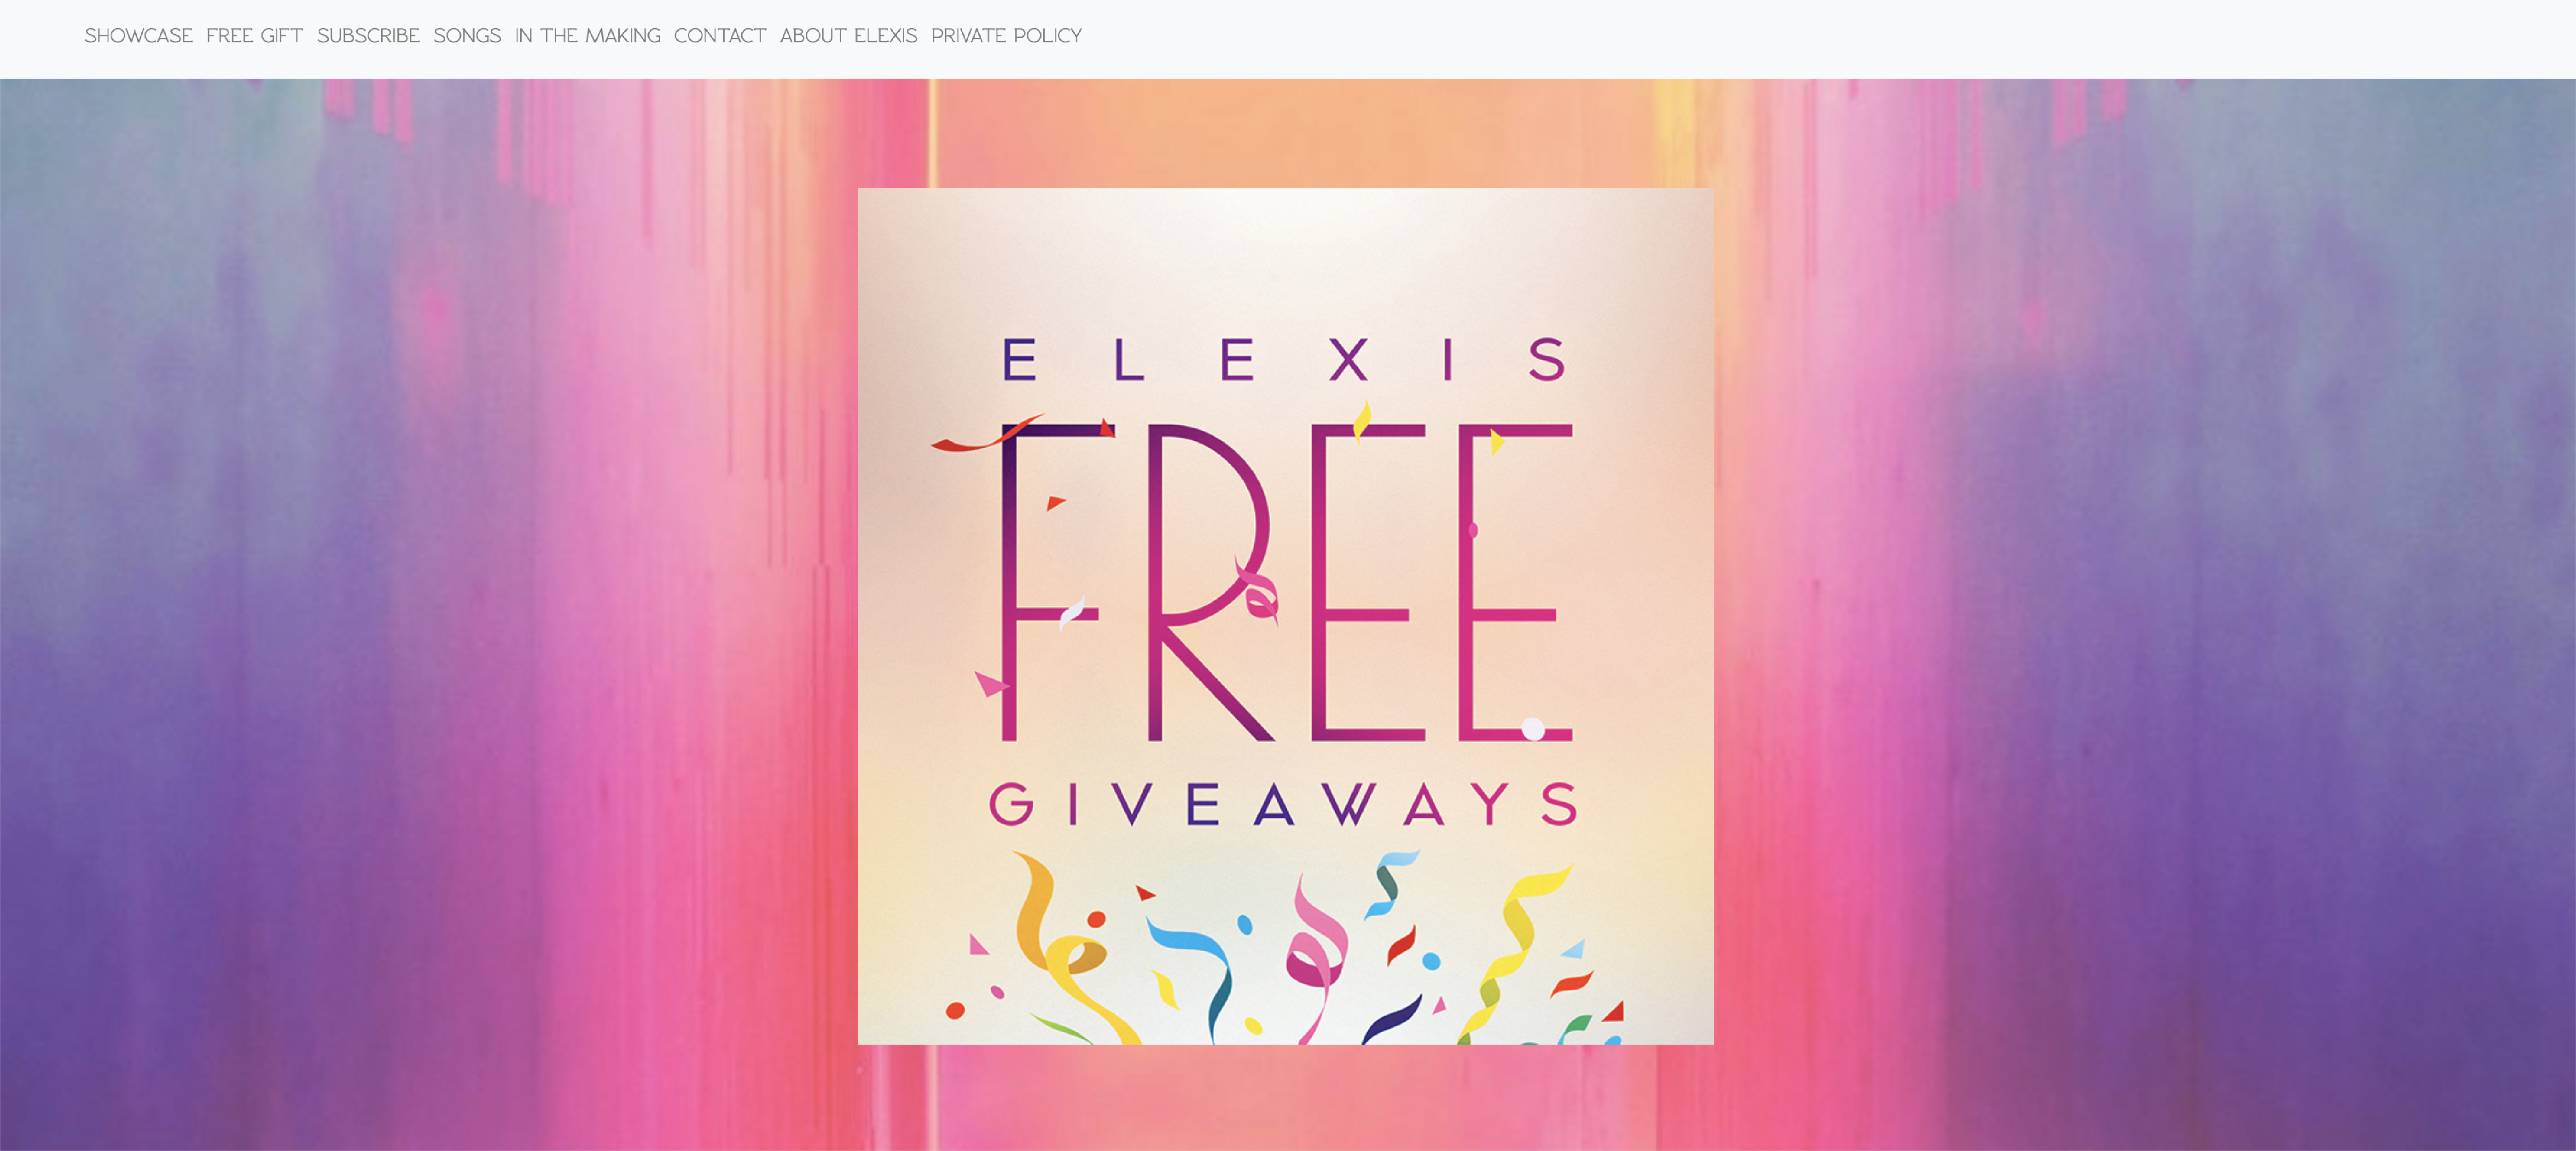 Elexis Free Giveaways / https://www.elexisfreegiveaways.com